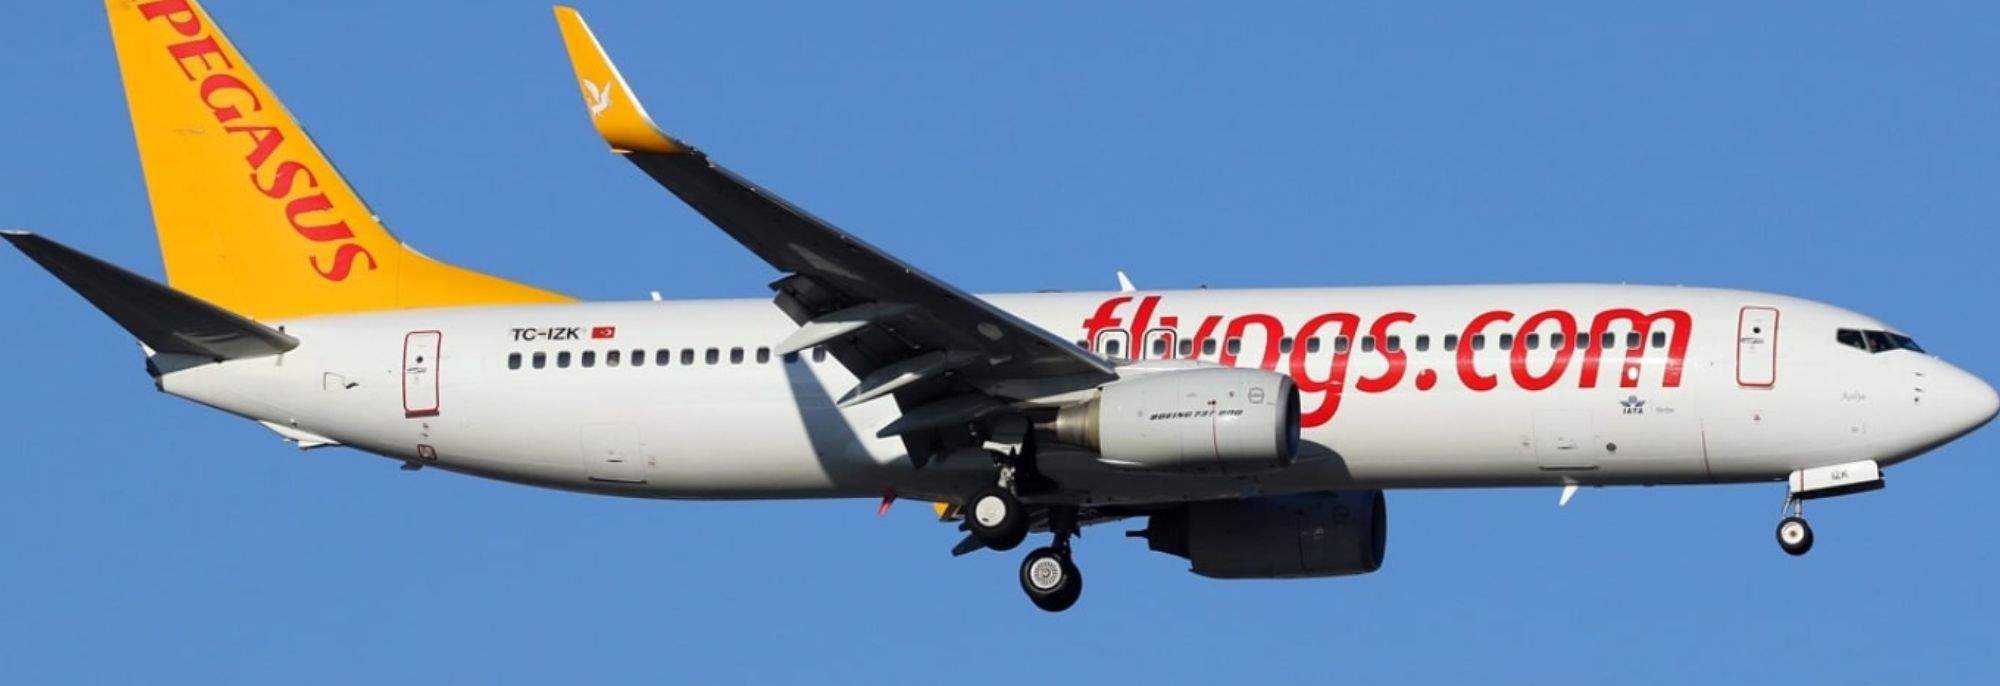 Verbinding Turkije-Polen: Pegasus Airlines landt op de luchthaven van Krakau